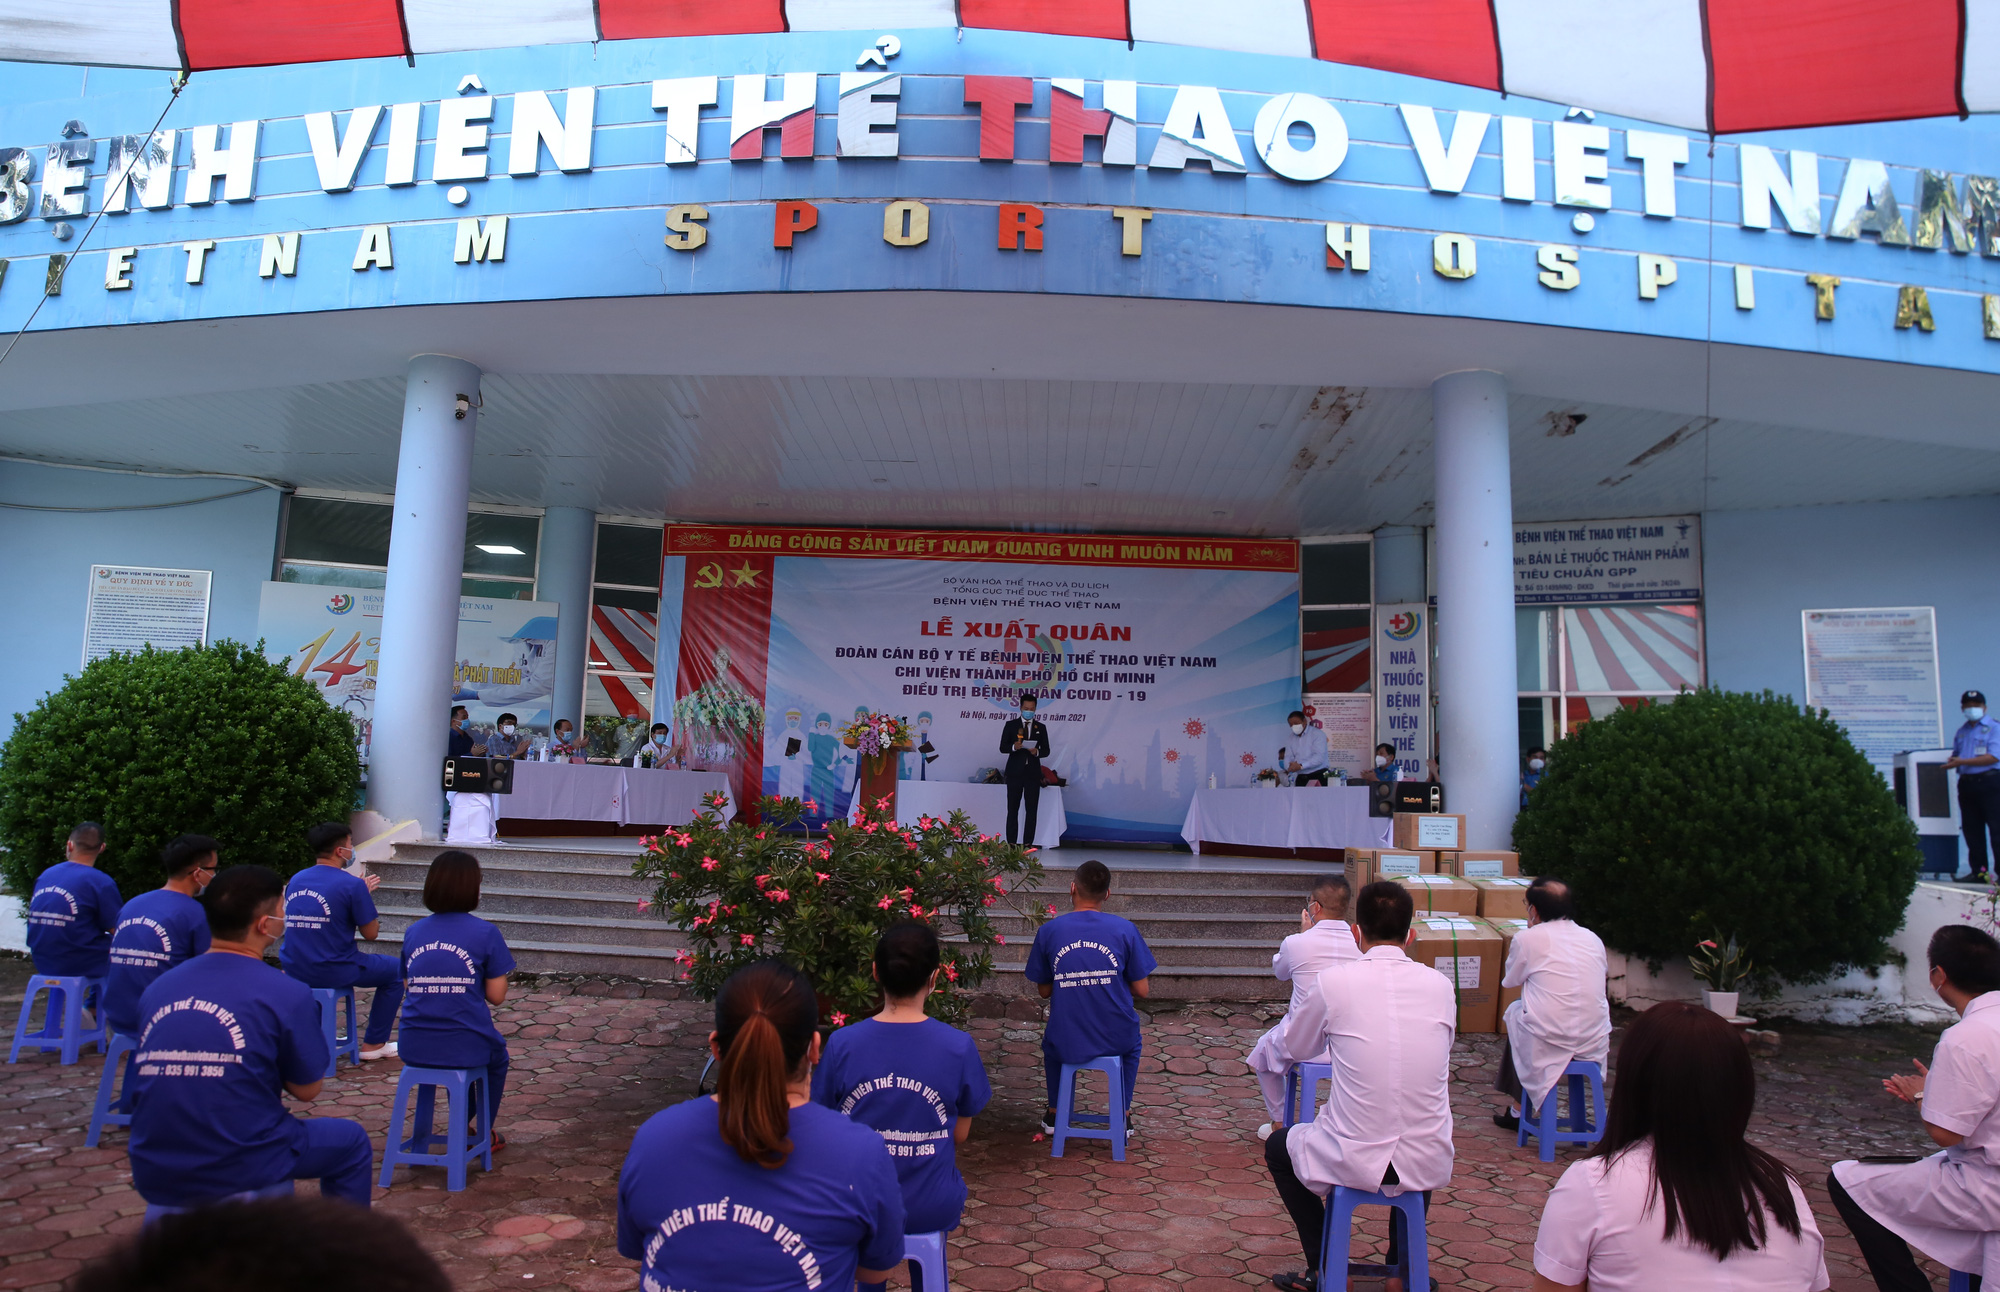 Bệnh viên Thể thao Việt Nam xuất quân tăng cường lực lượng vào miền Nam chống dịch - Ảnh 1.